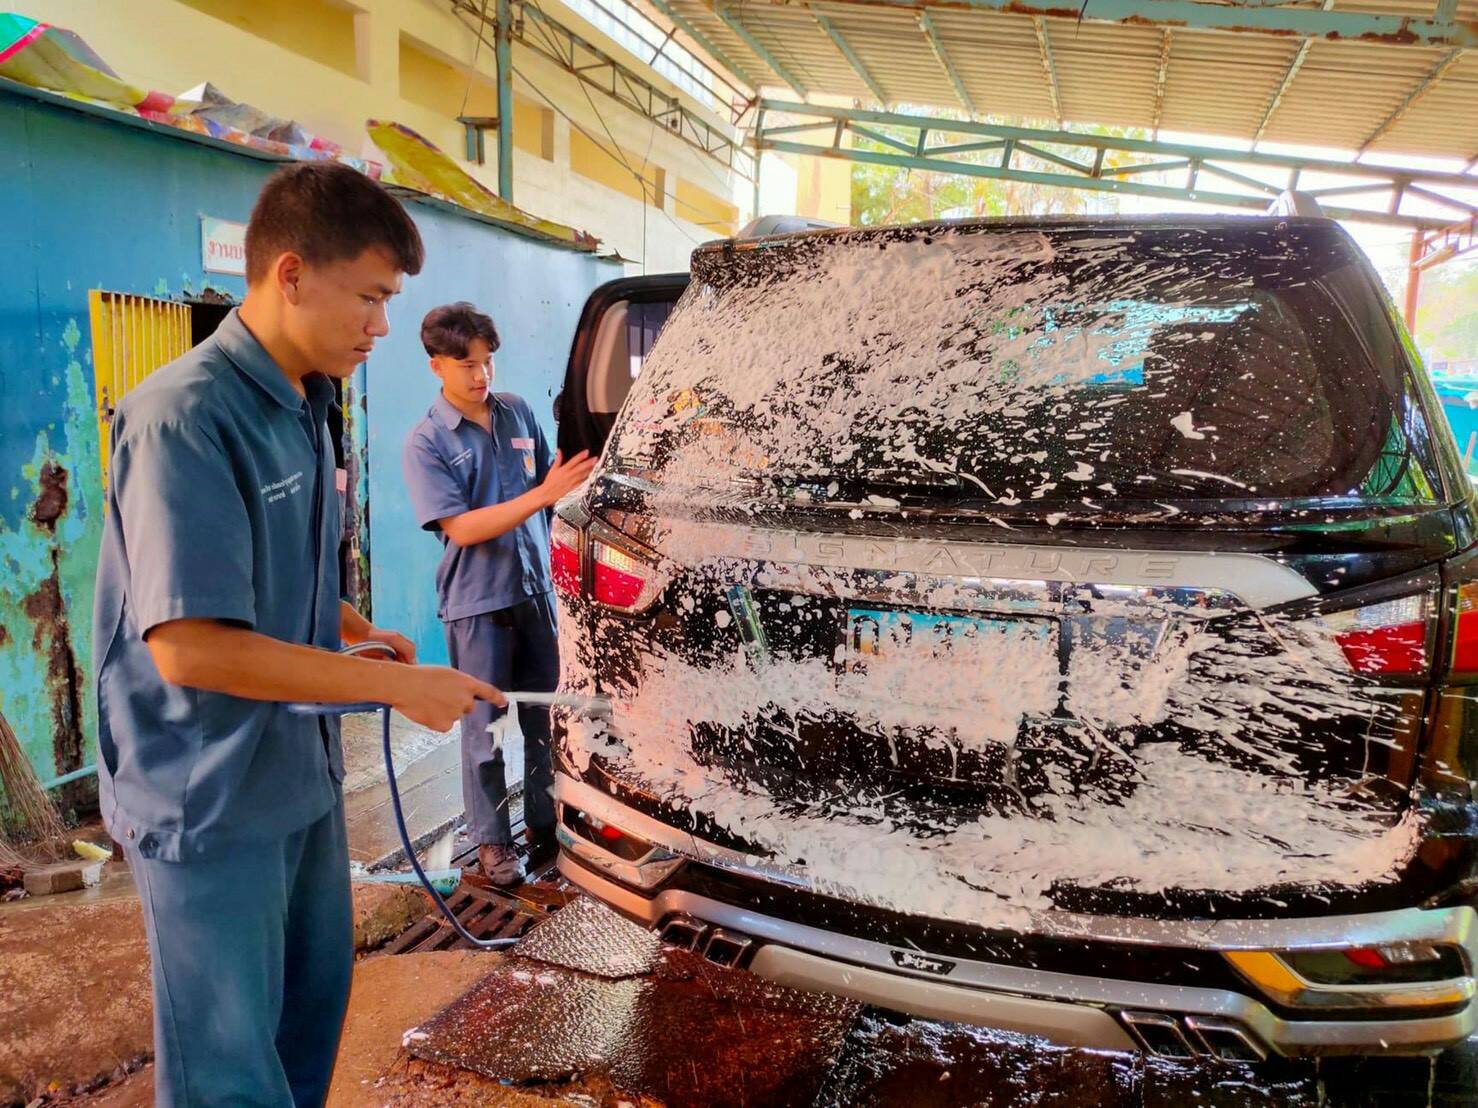 ยืนหนึ่งด้านบริการ ! เด็กเทคนิคปราจีนเปิดศูนย์ ME Car Care ให้บริการล้างอัดฉีดและเคลือบเงารถยนต์และรถจักรยานยนต์ สร้างรายได้หลายหมื่นบาทต่อเดือน